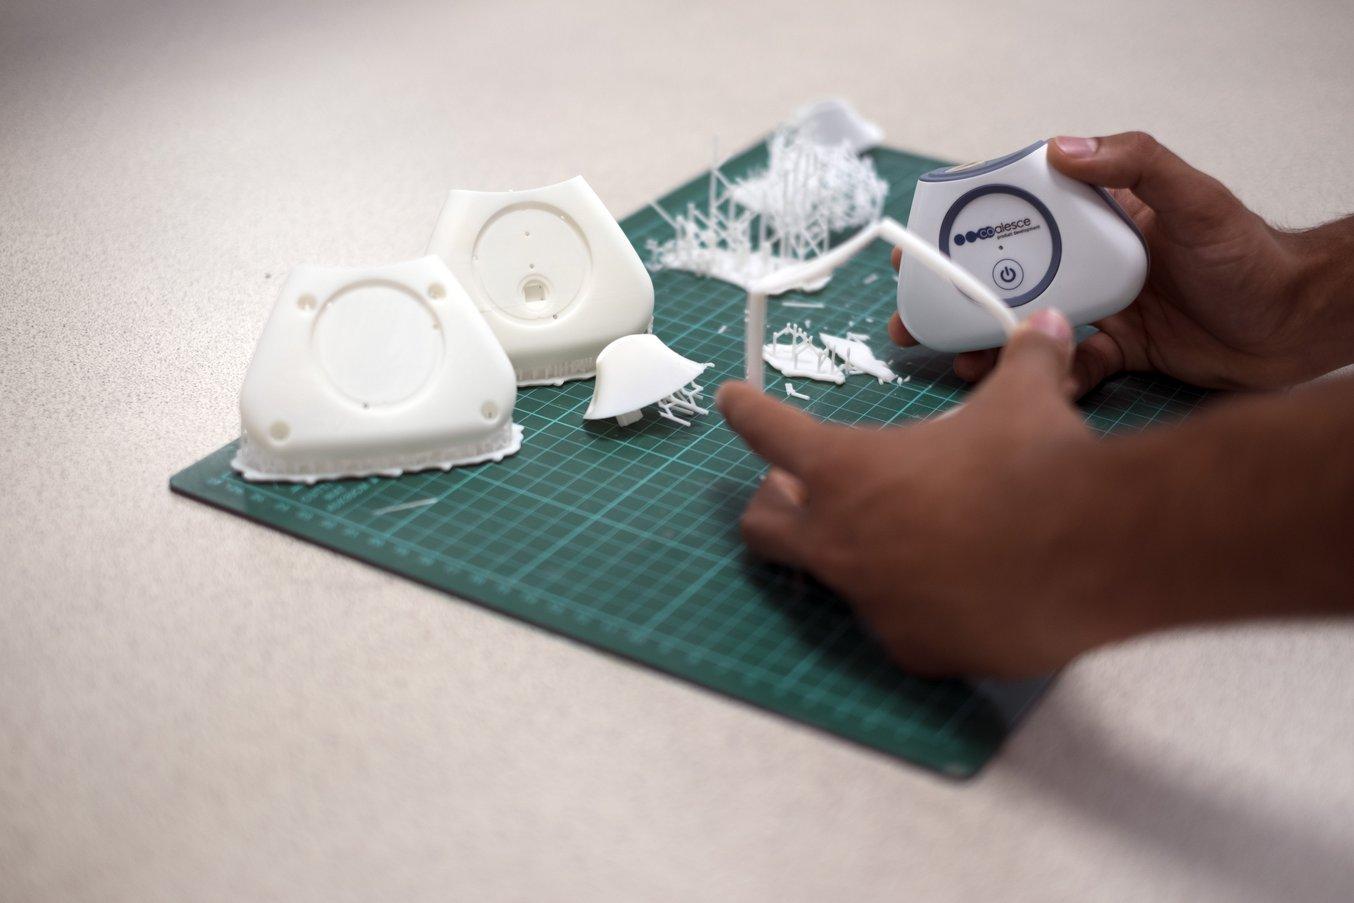 Nella fase di post-elaborazione, Chhabildas rimuove i supporti e prepara le parti stampate in 3D per l’applicazione del primer, la verniciatura e l’assemblaggio.